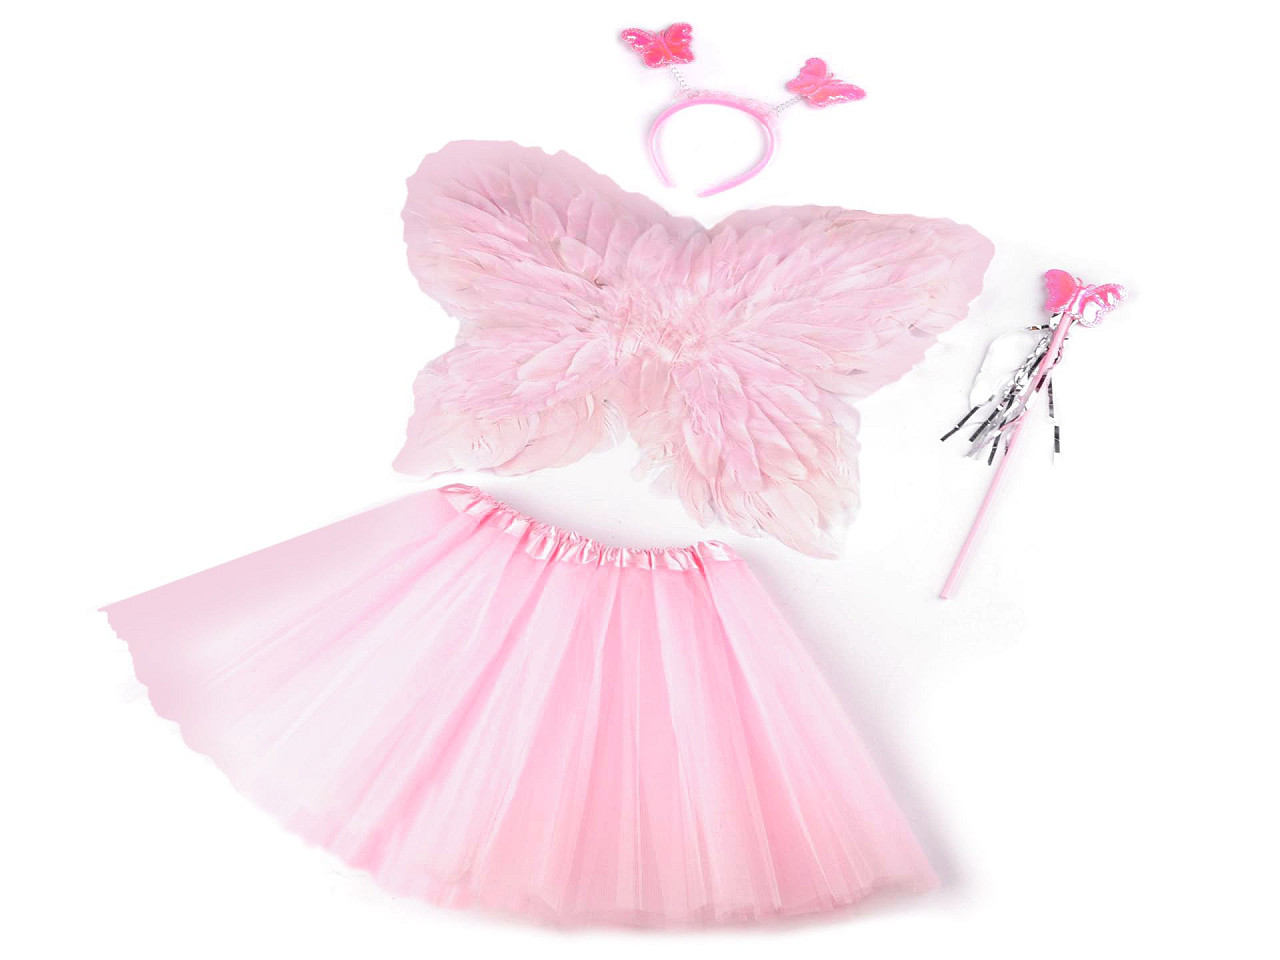 Karnevalový kostým - víla, péřová křídla, barva 2 růžová sv.